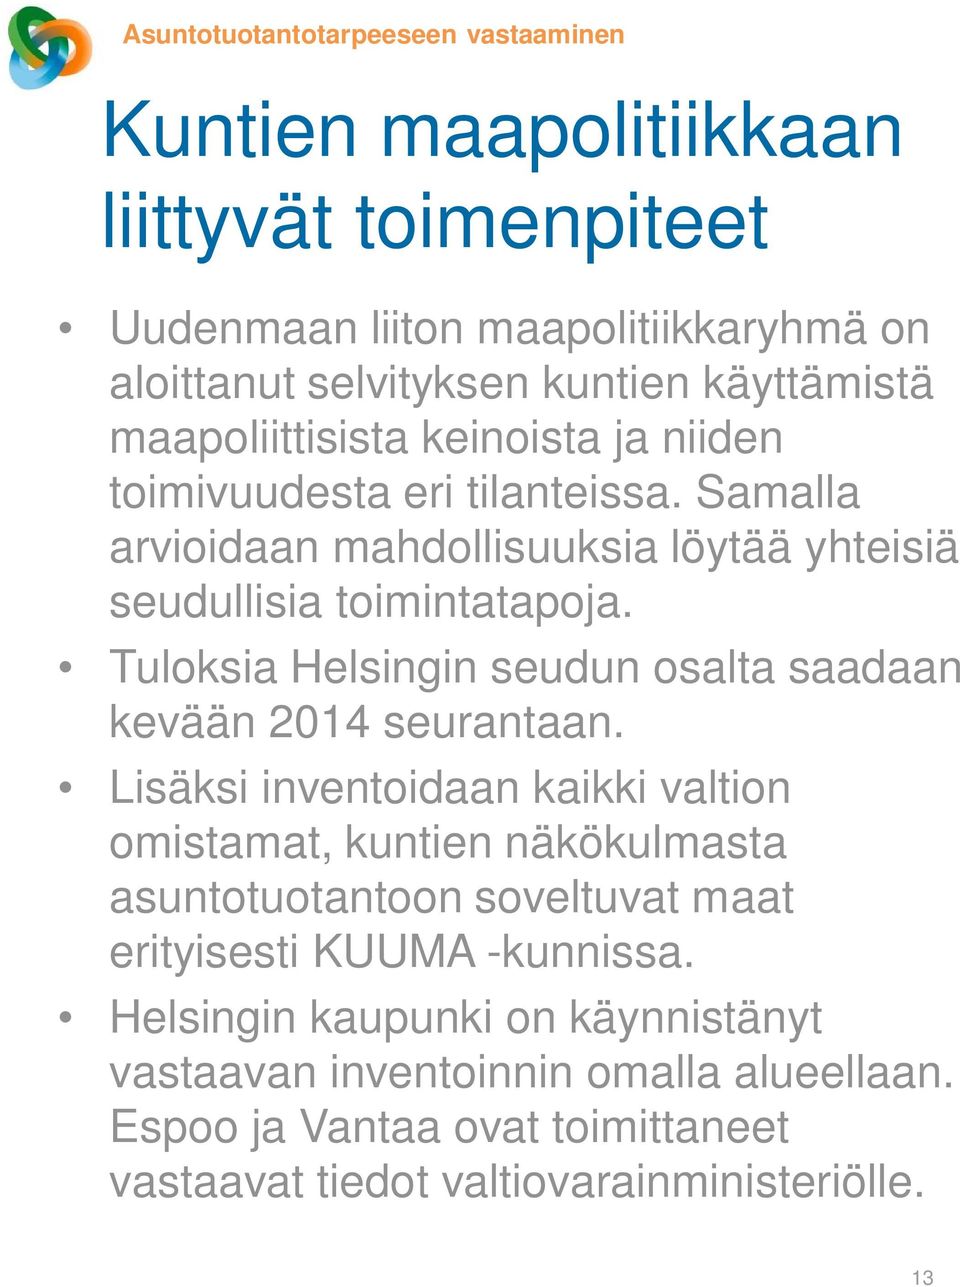 Tuloksia Helsingin seudun osalta saadaan kevään 2014 seurantaan.